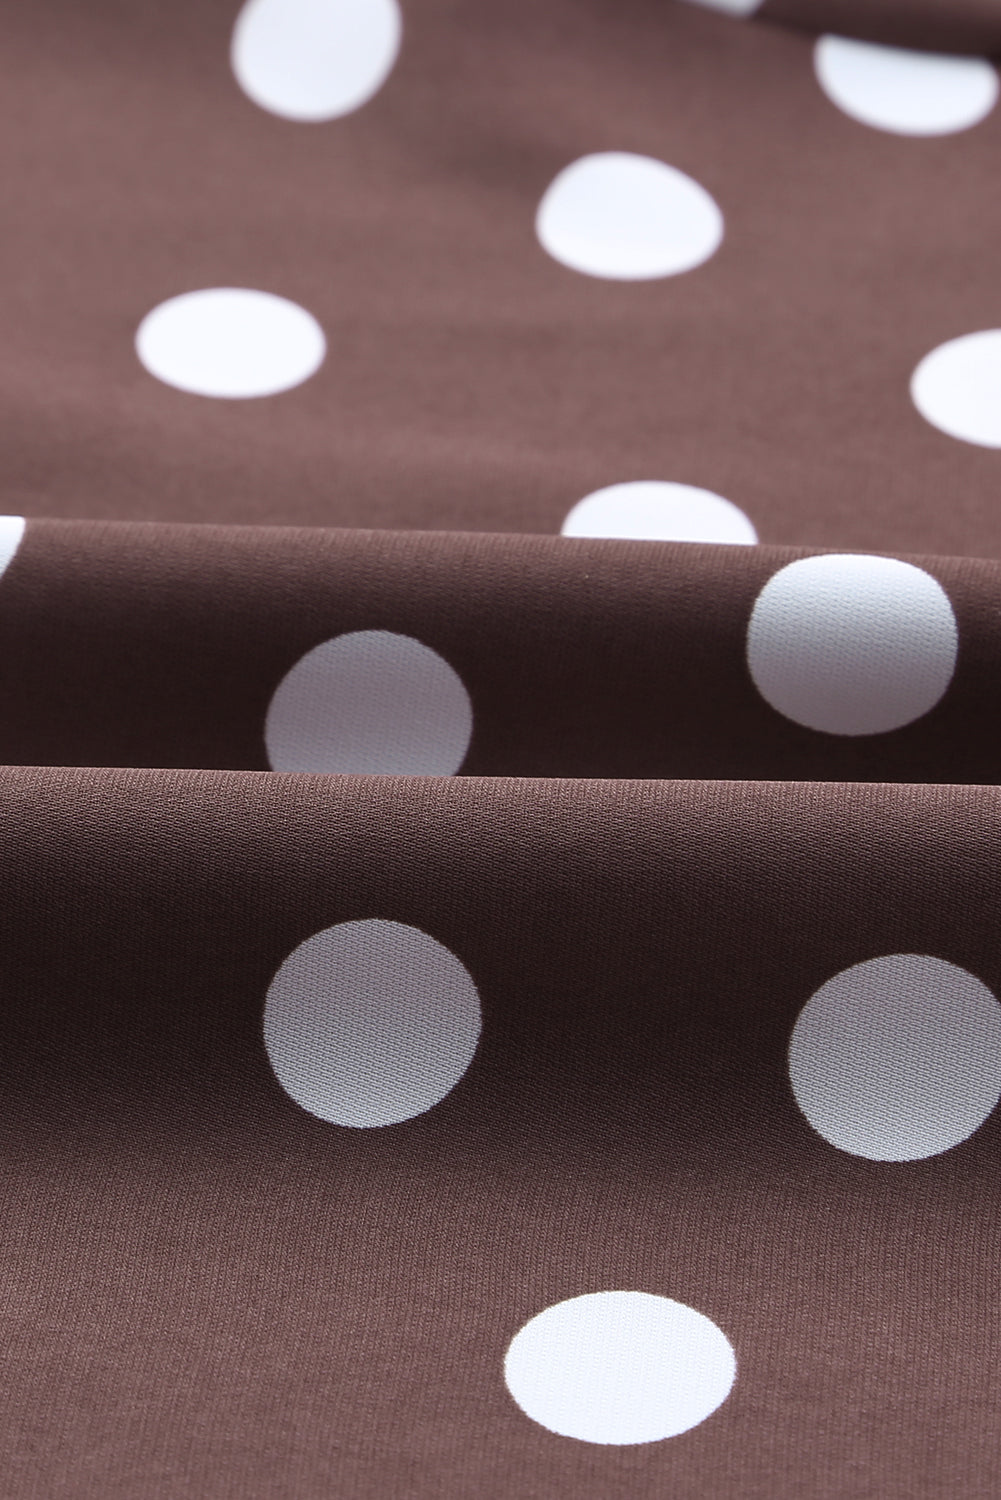 Brown Polka Dot Print Lace-up Ruffled Mini Womens Dress - US2EInc Apparel Plug Ltd. Co